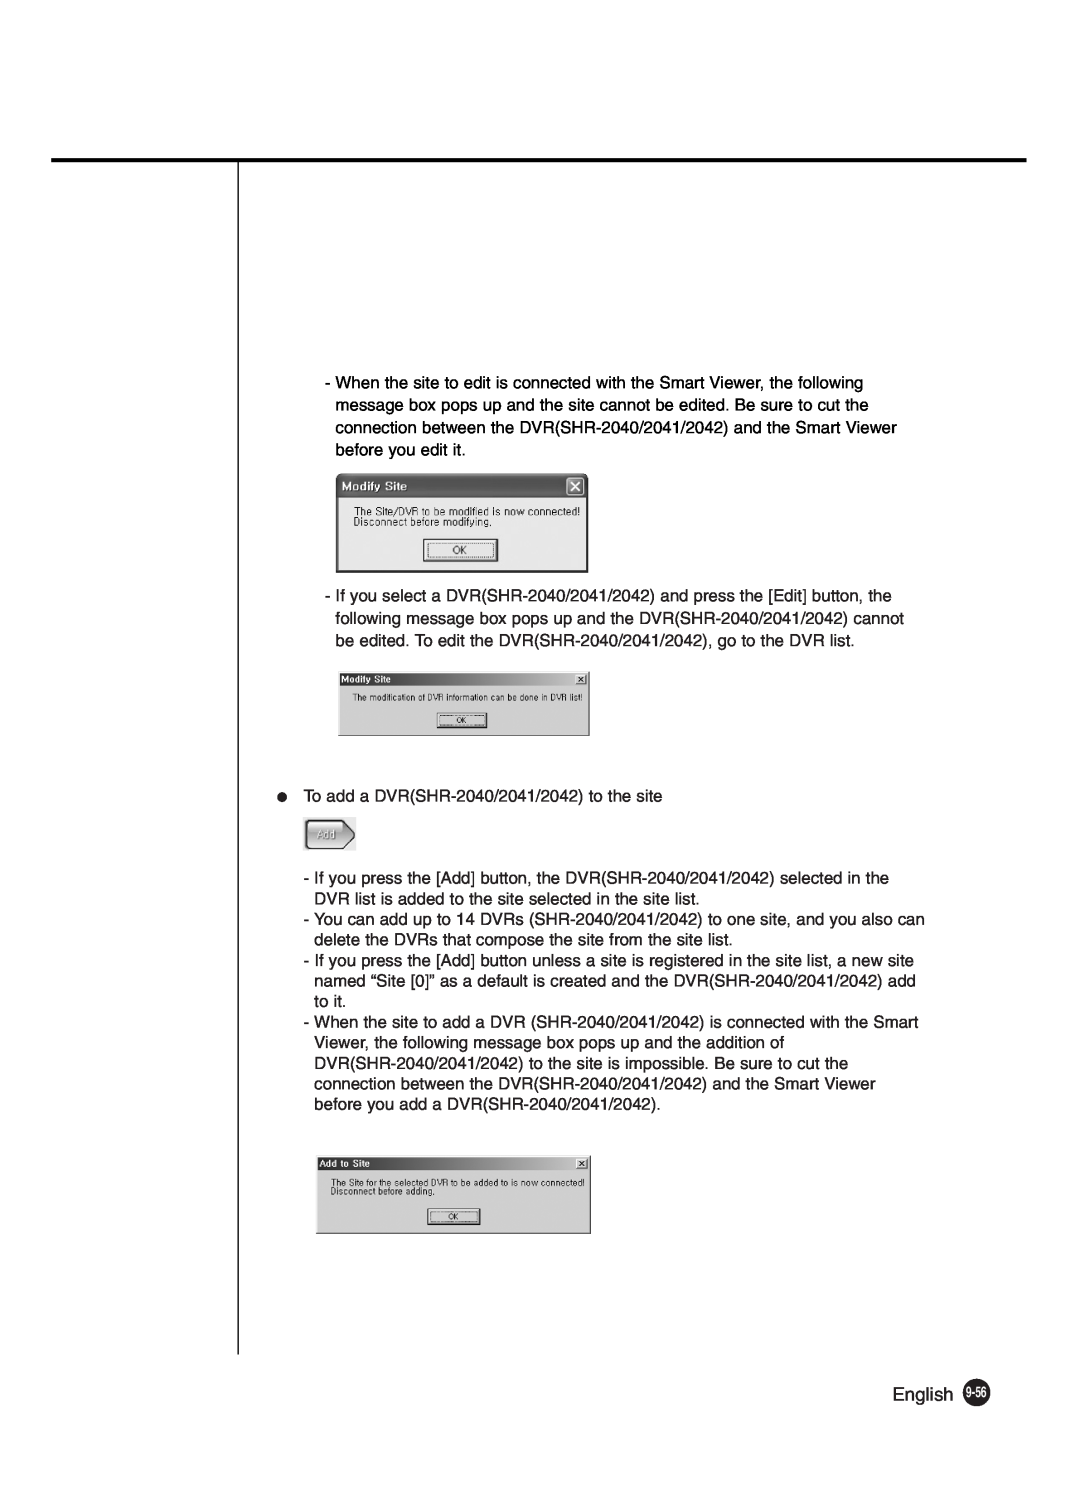 Samsung SHR-2040P250, SHR-2042P250 manual To add a DVRSHR-2040/2041/2042 to the site 